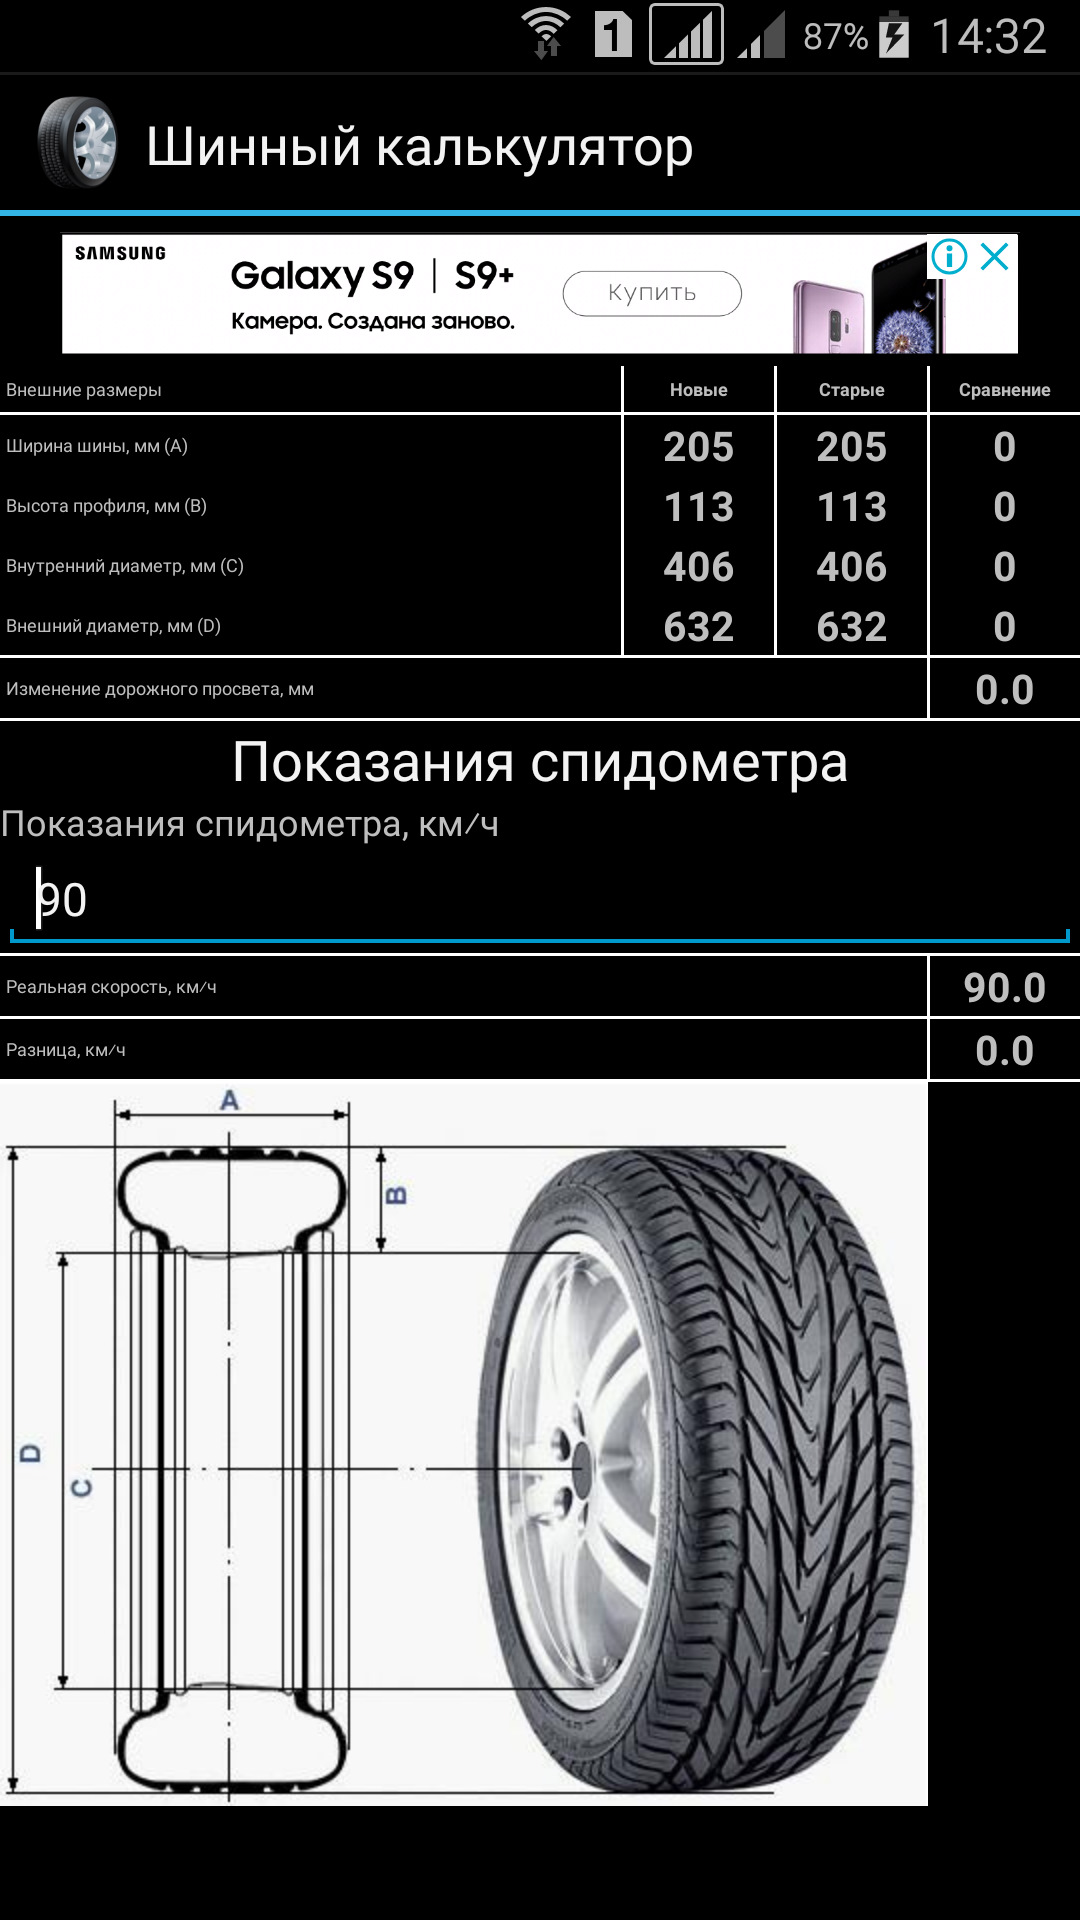 Размеры колес в мм